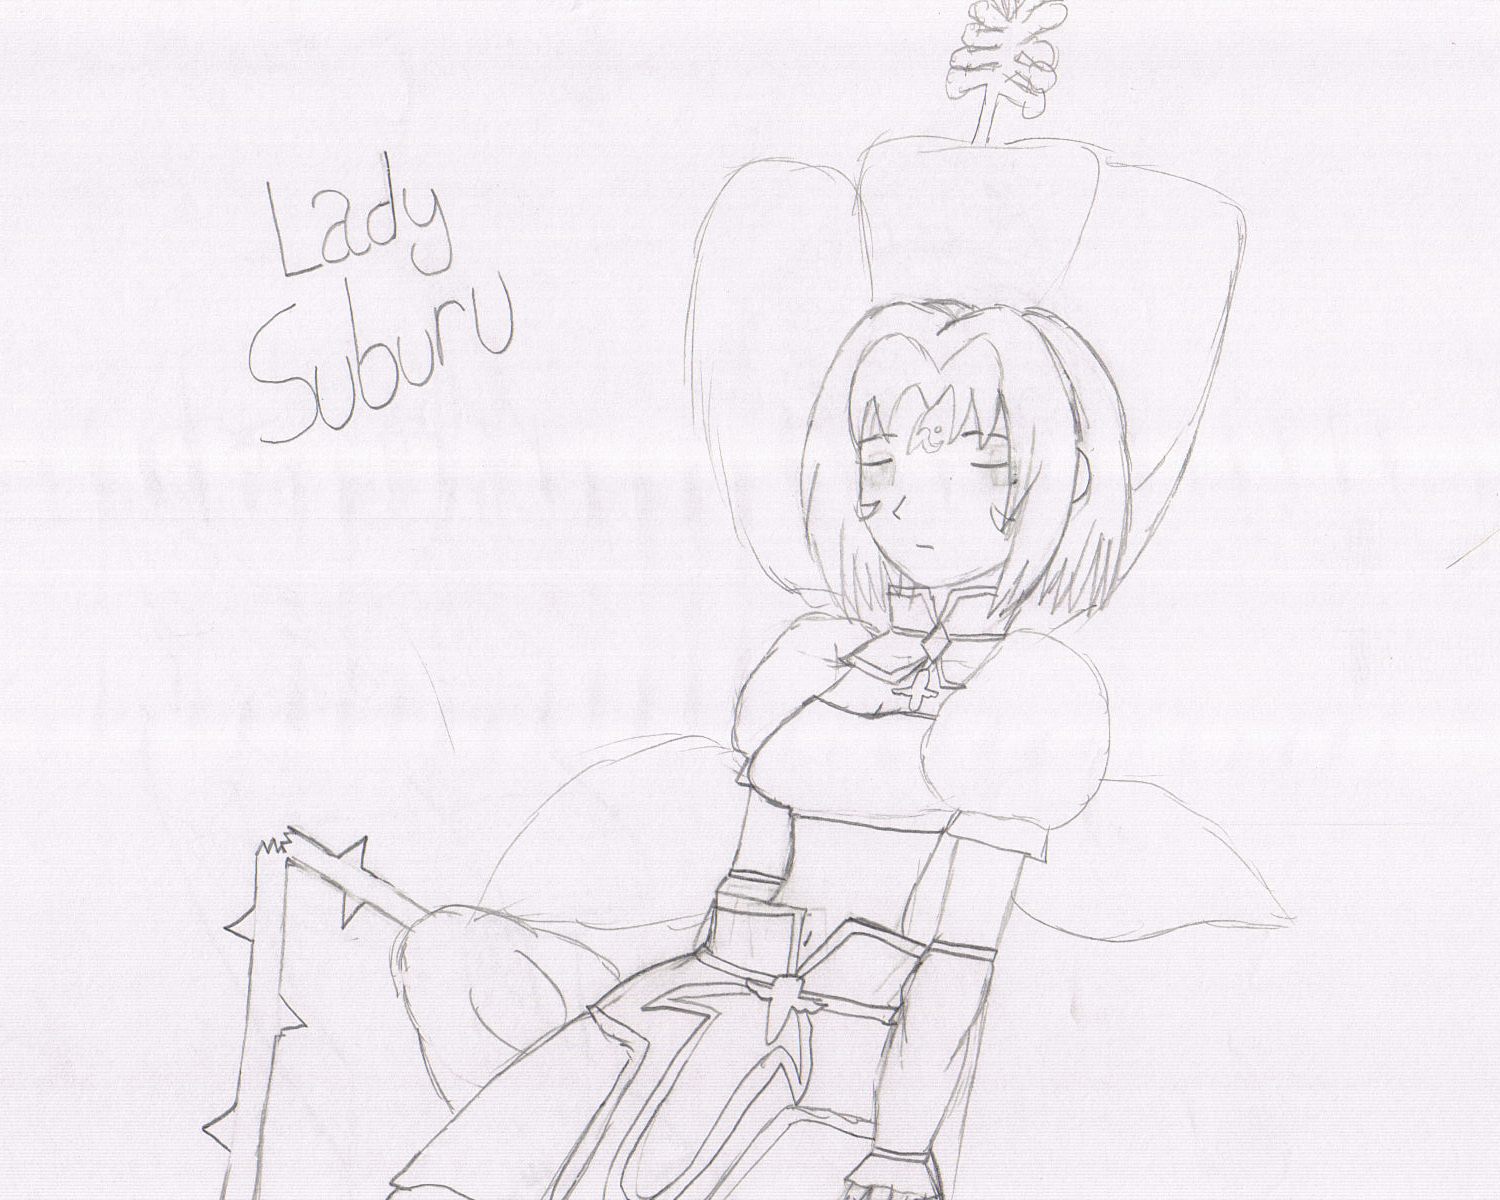 Lady Subaru by Ohka_121